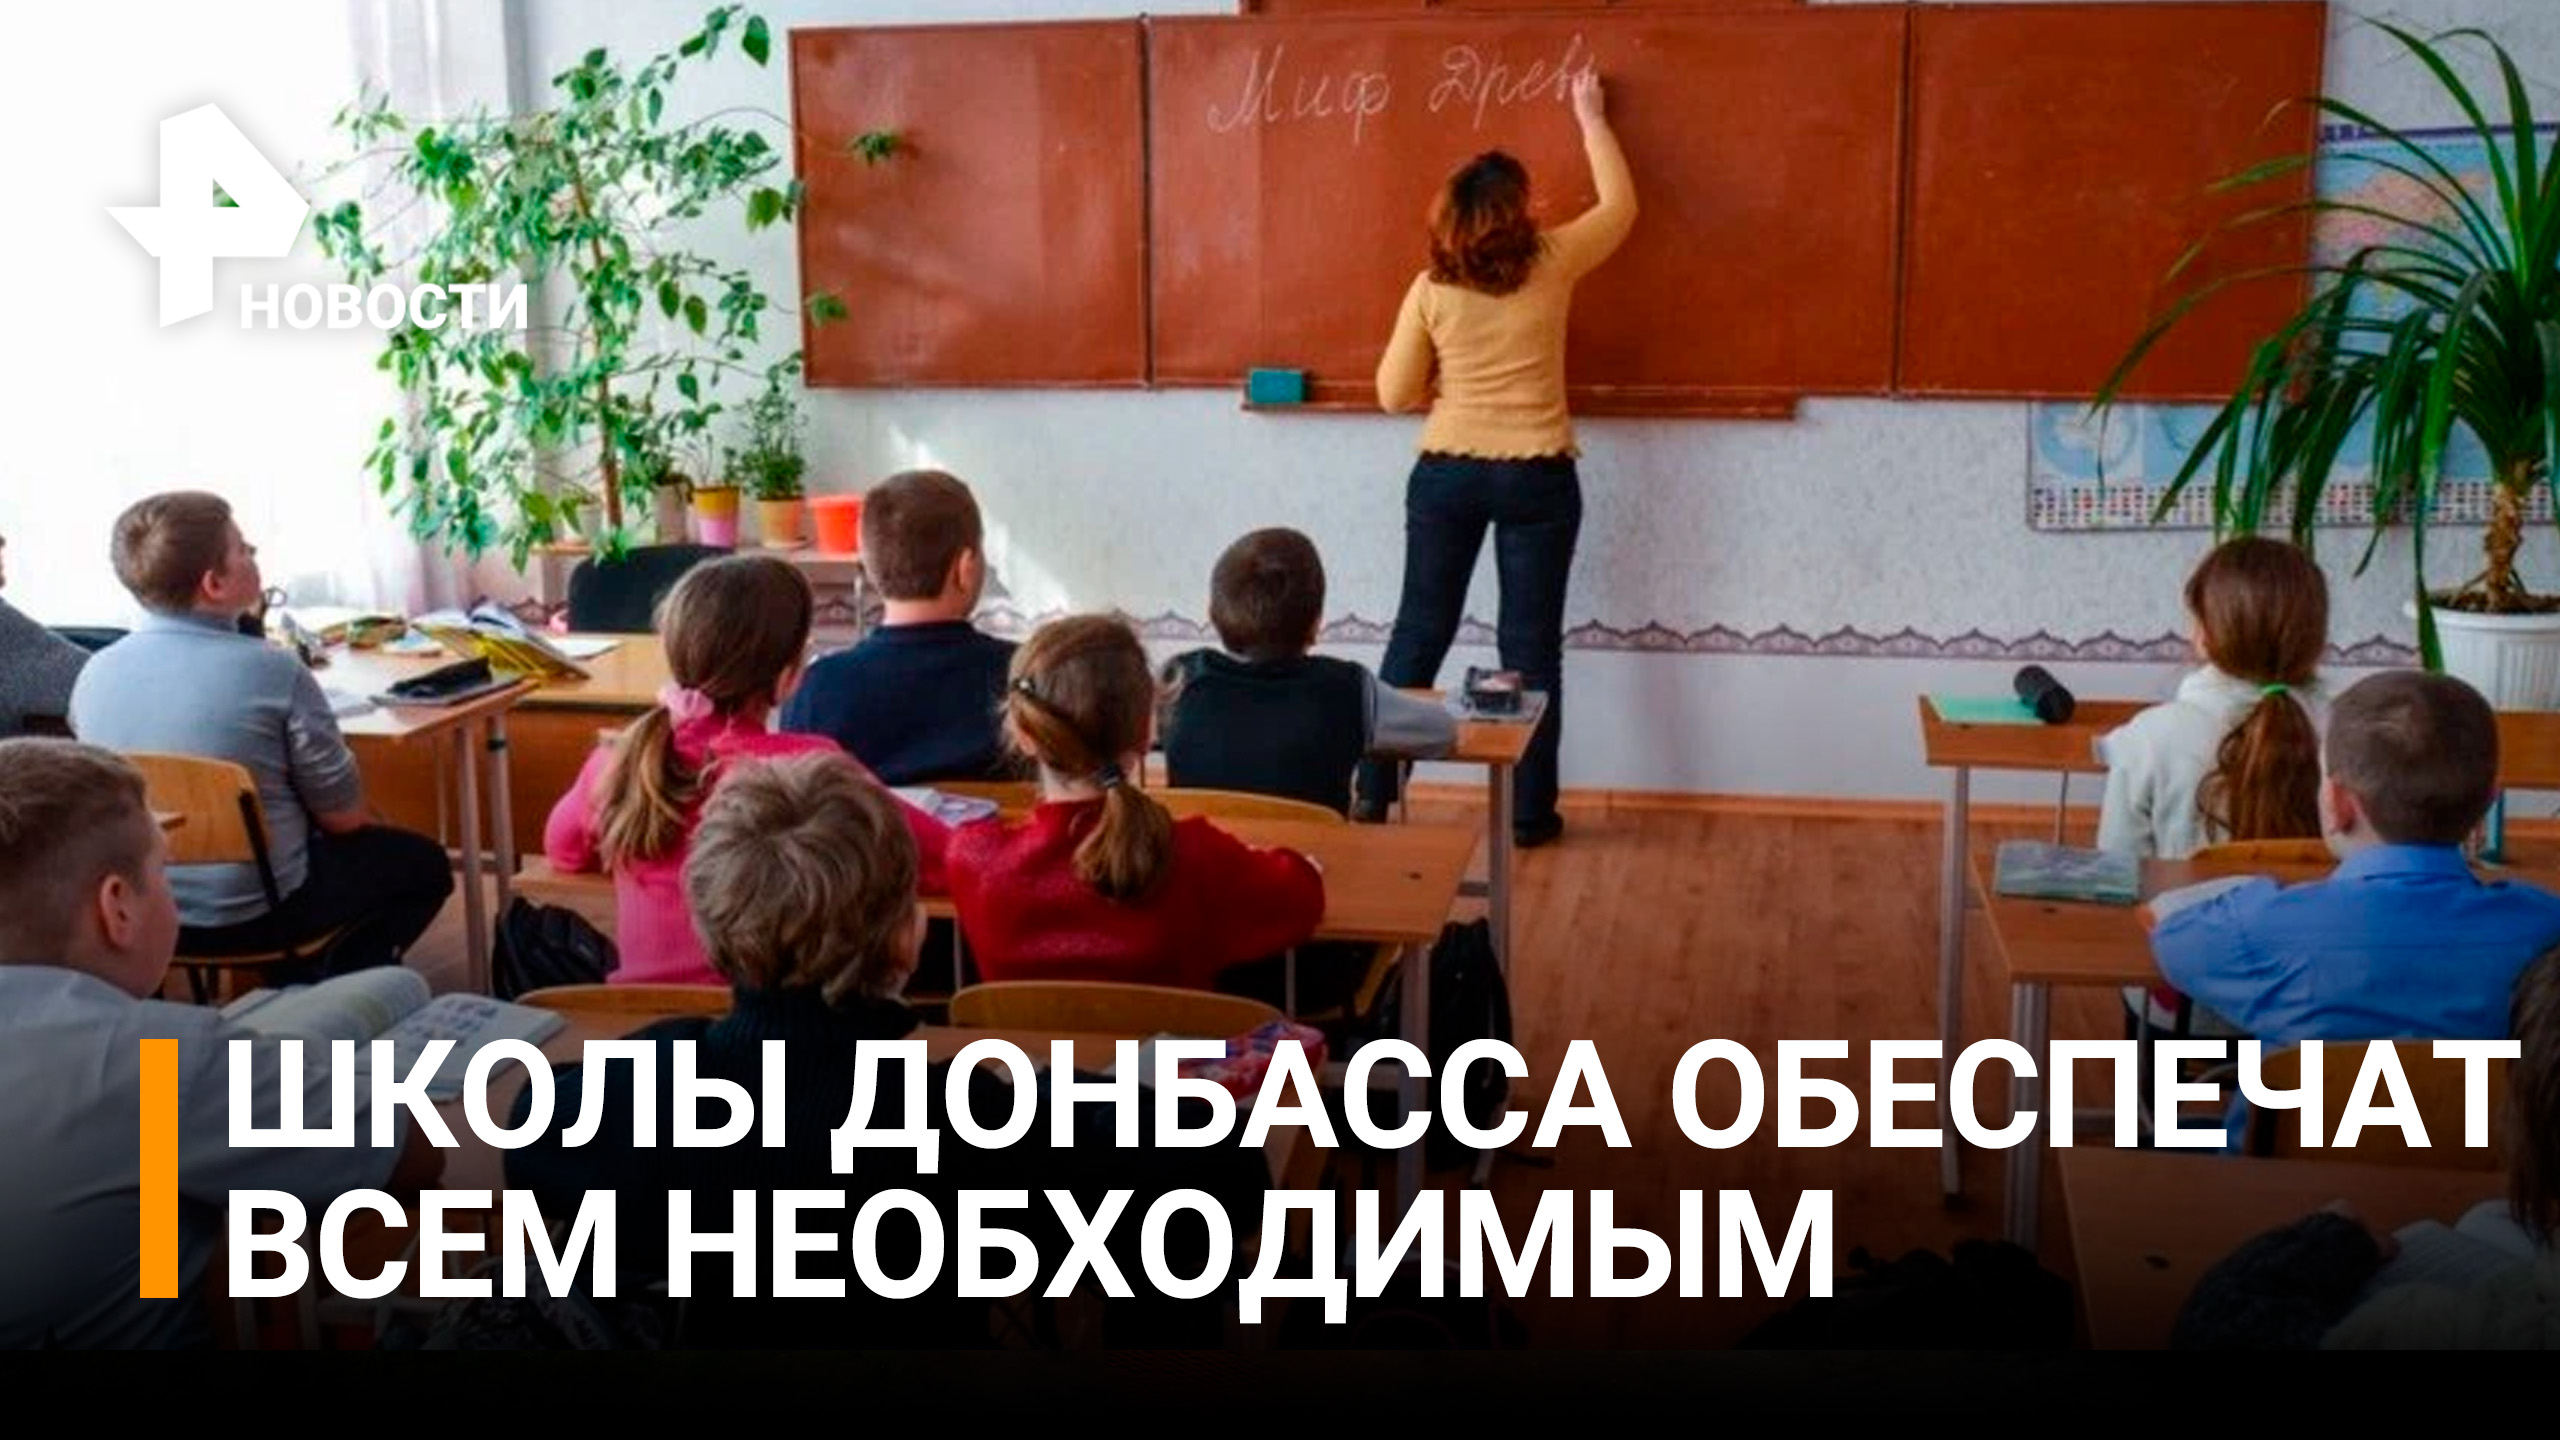 Уроки истории по-украински закончились: как прошло 1 сентября в школах Донбасса / РЕН Новости